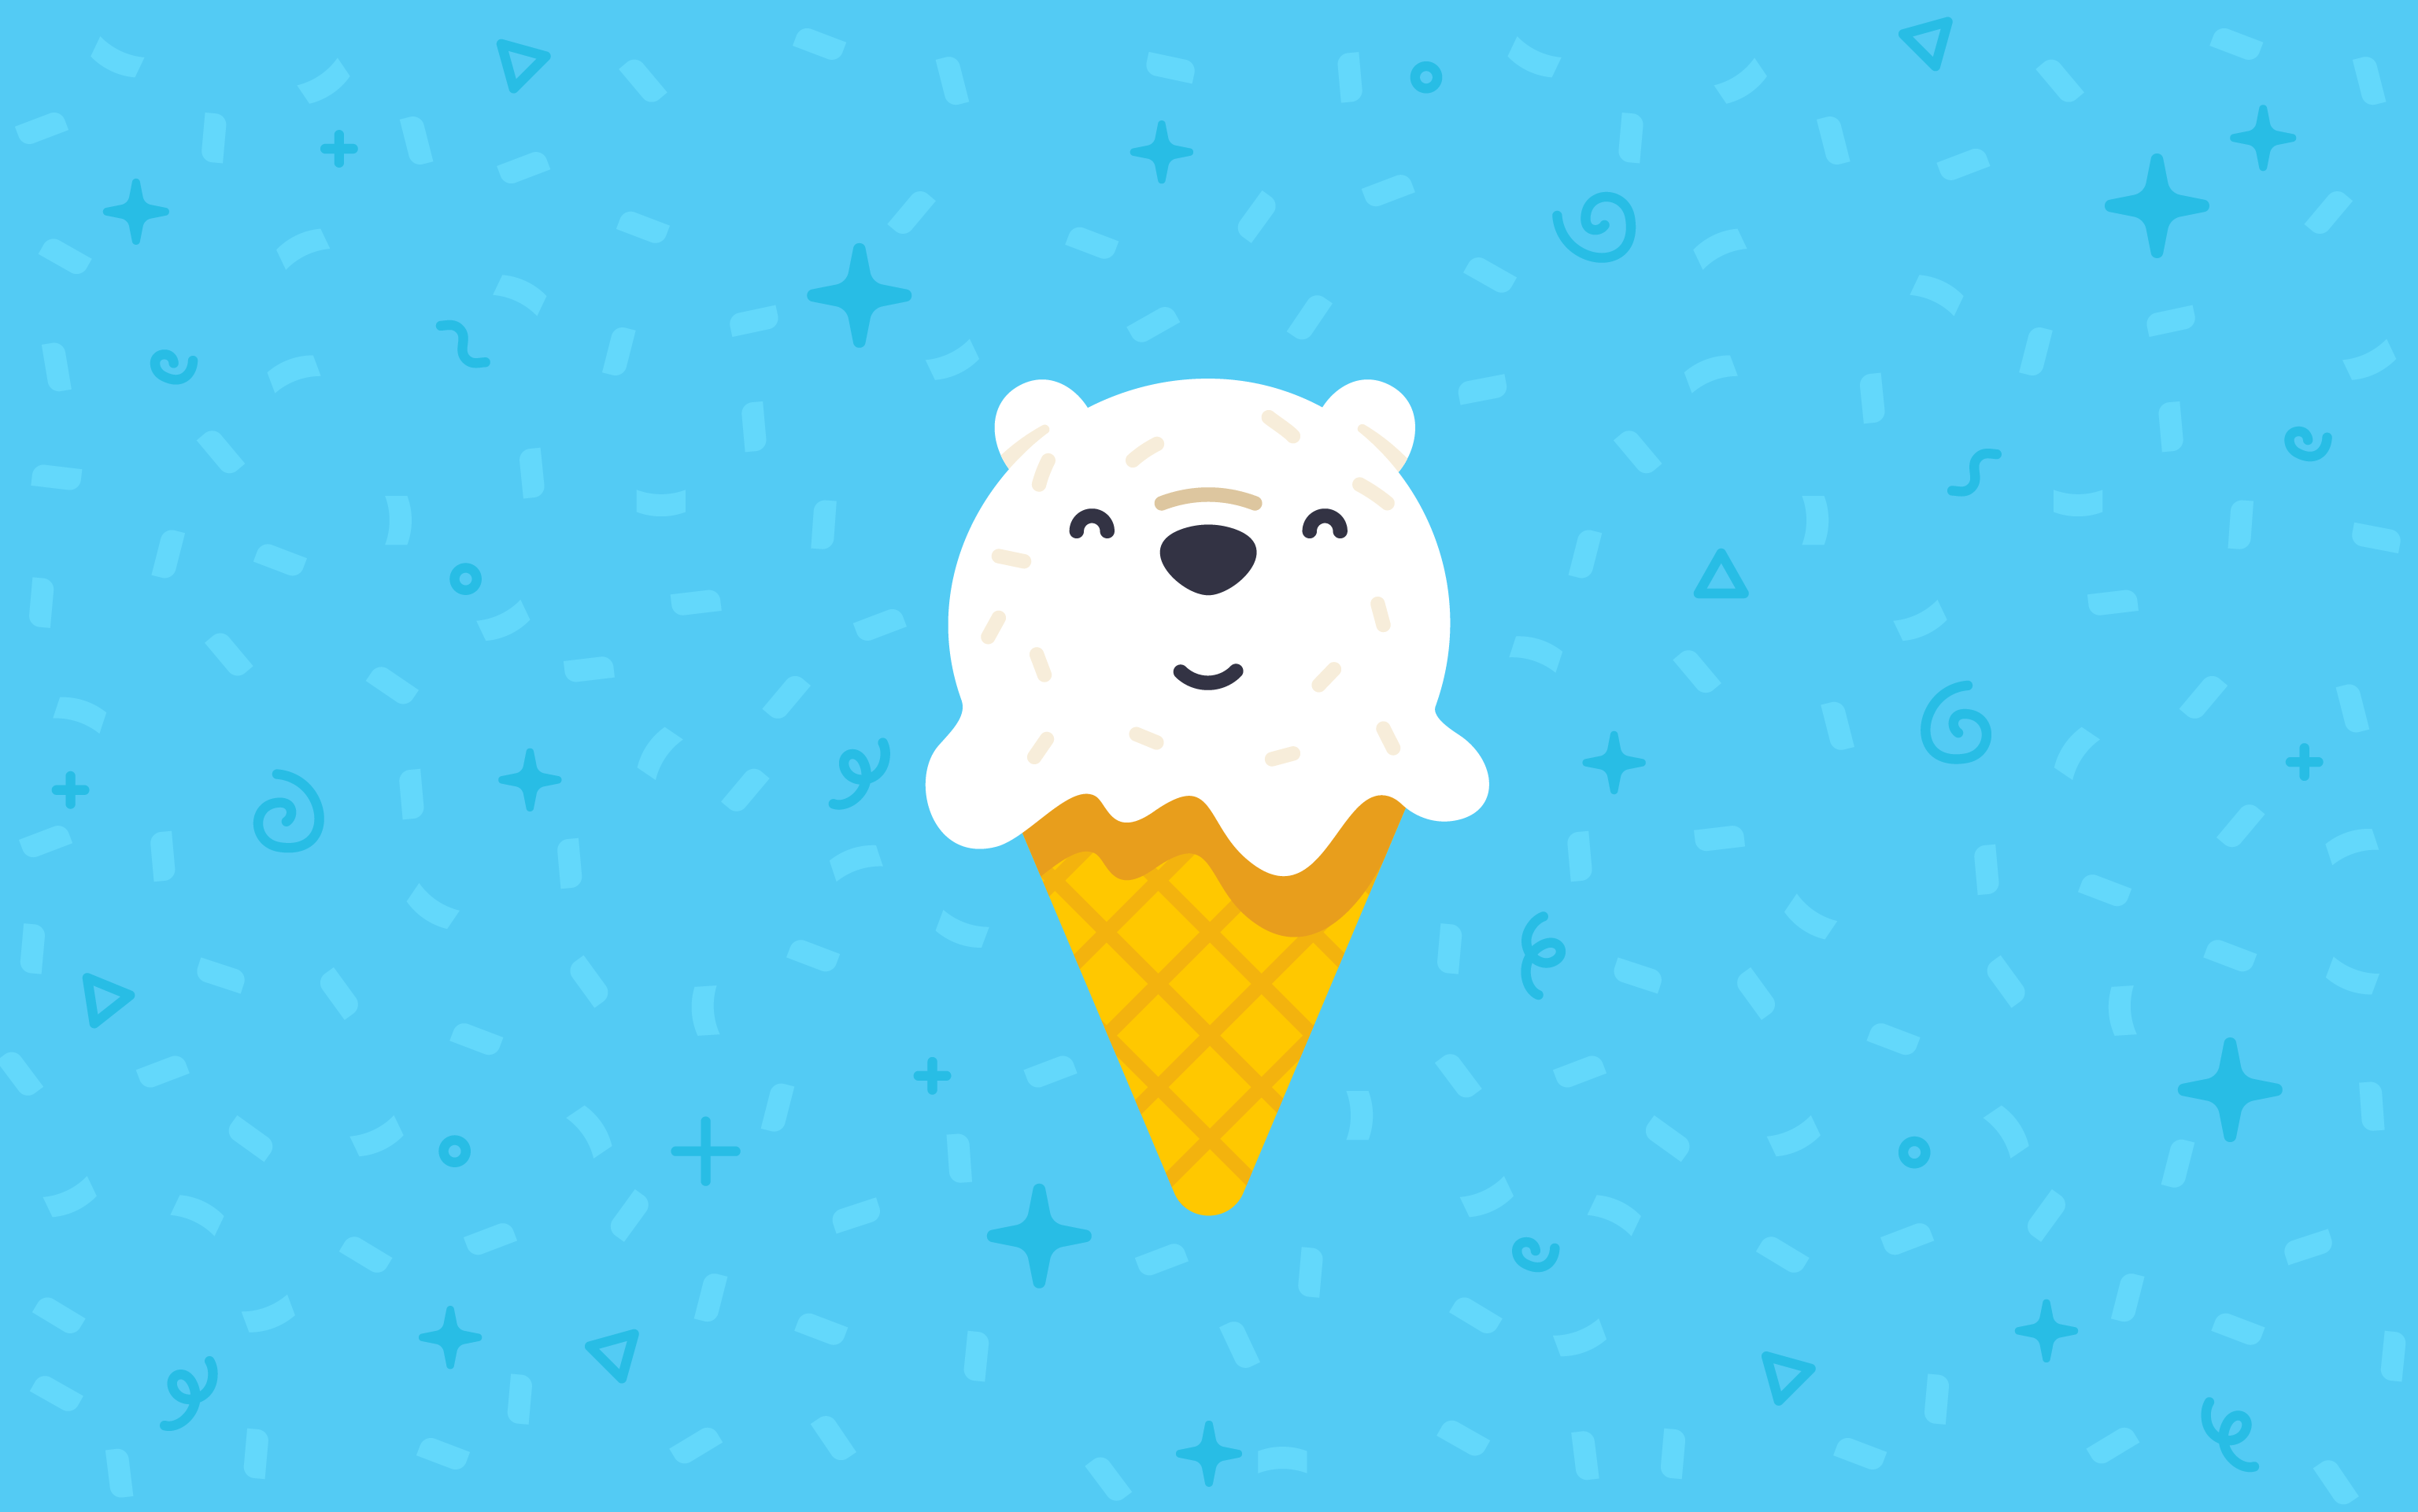 A polar bear is sitting on top of an ice cream cone - Ice cream, teddy bear